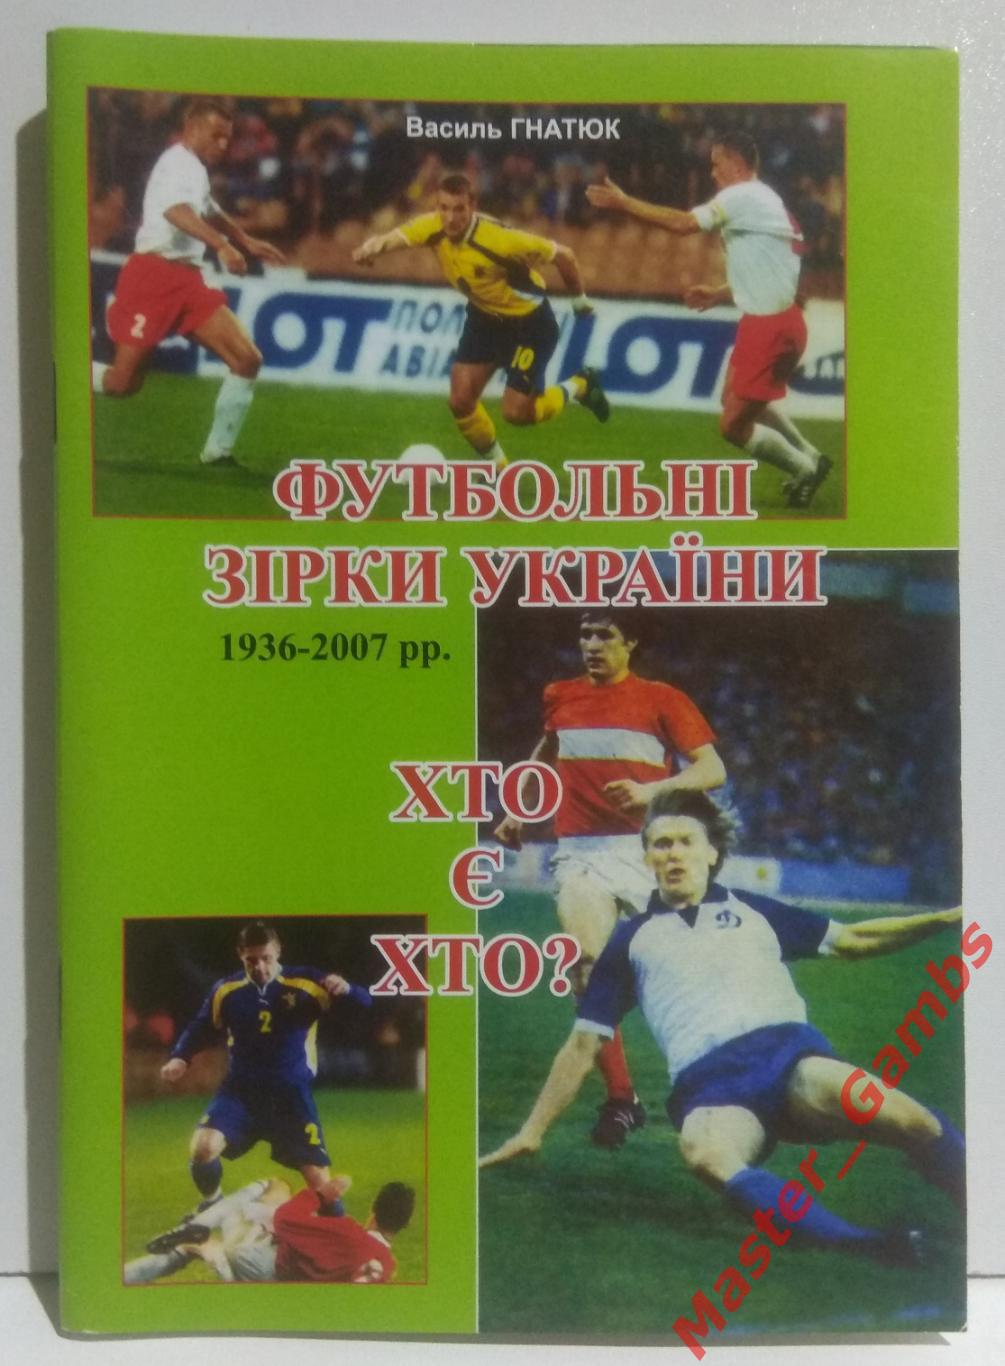 Гнатюк - Футбольные звёзды Украины 1936 - 2006 г.г. Кто есть кто? 2007*